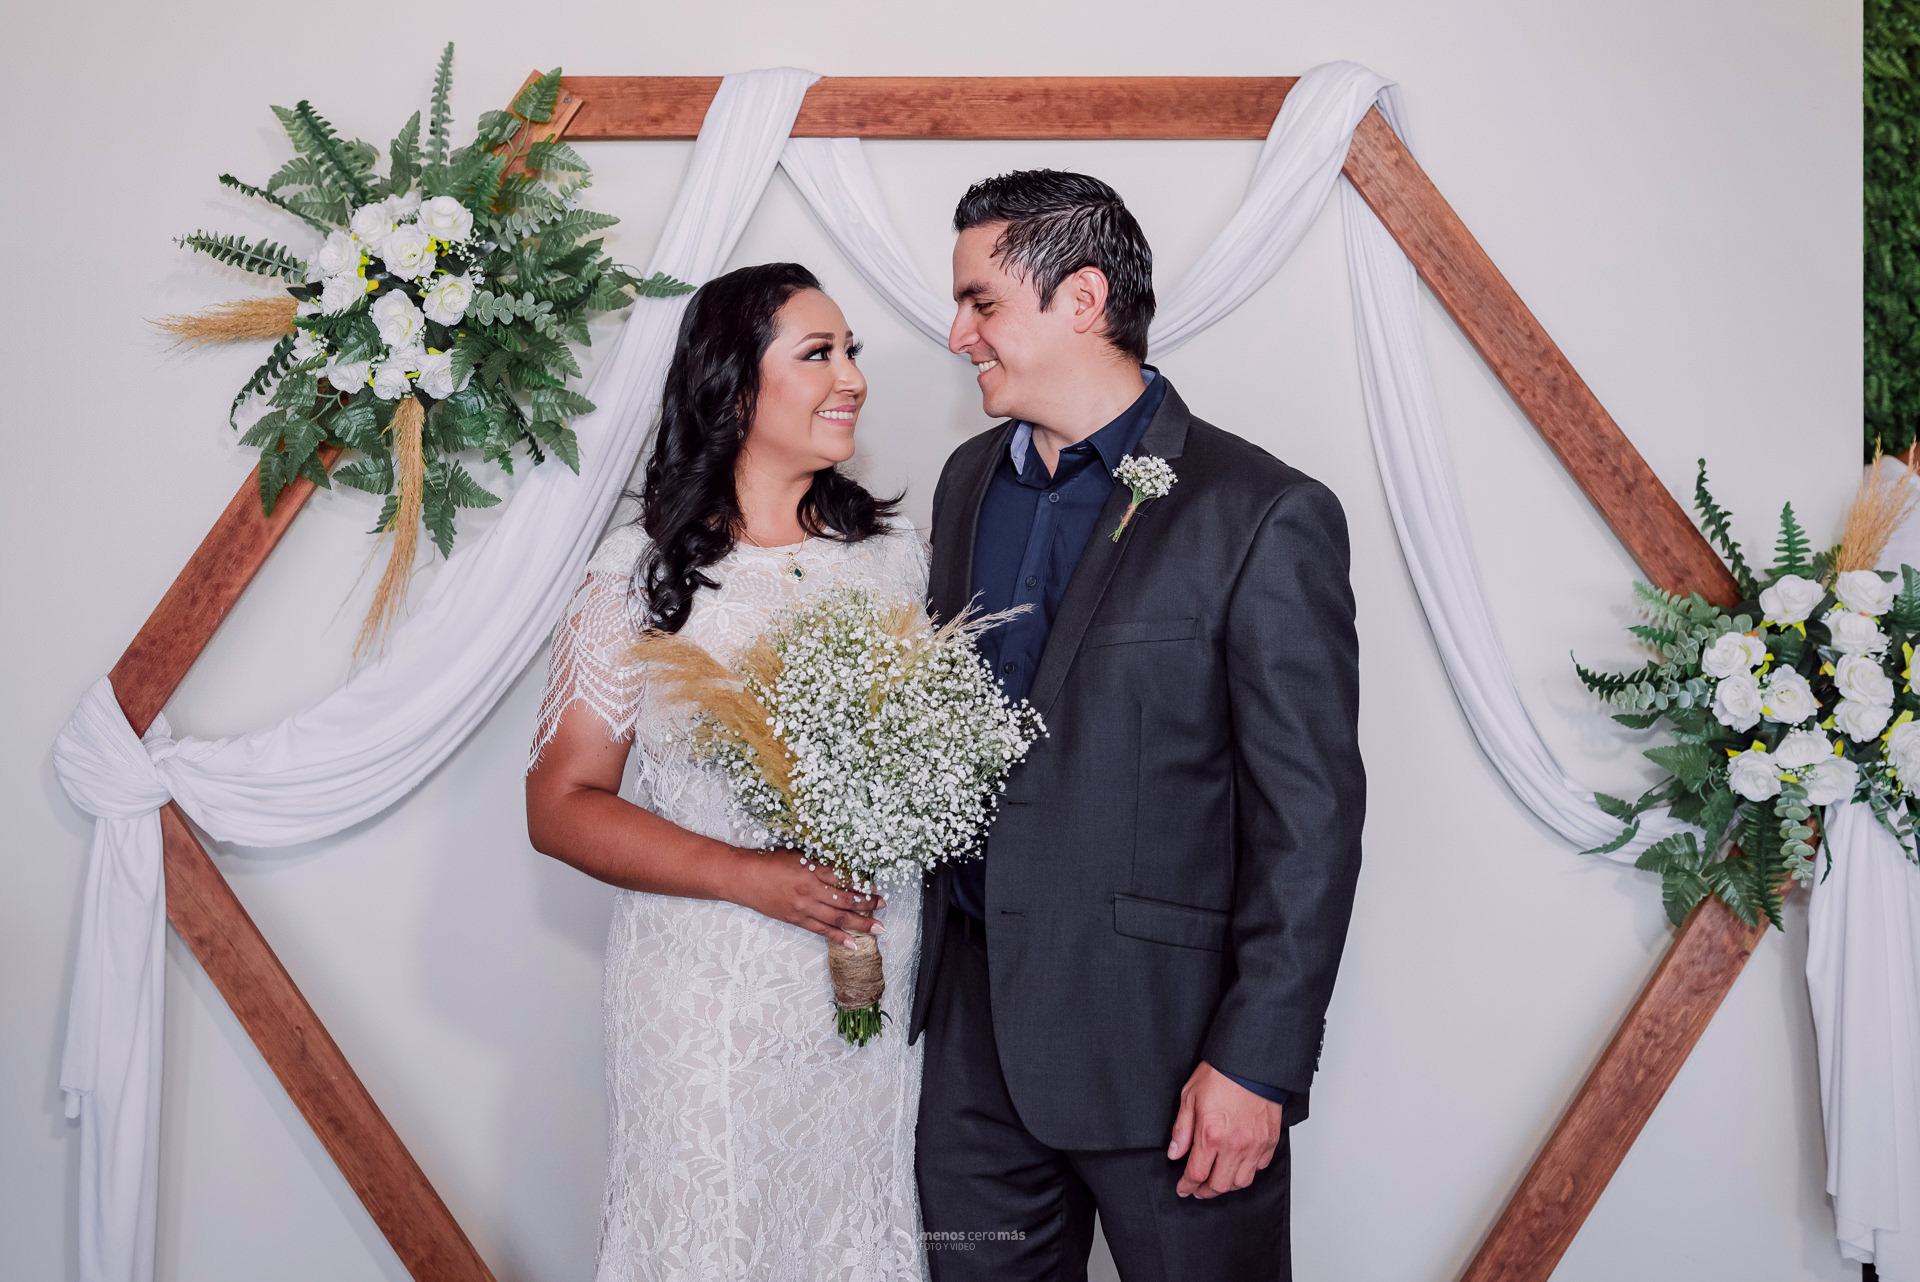 Fotografía de Raquel y José Luis en su boda civil celebrada en Corato Salón de Eventos, en Apodaca, México. La novia, vestida con un vestido blanco, sostiene su ramo en la mano. El novio, vestido con un traje negro, sonríe y mira a la novia.